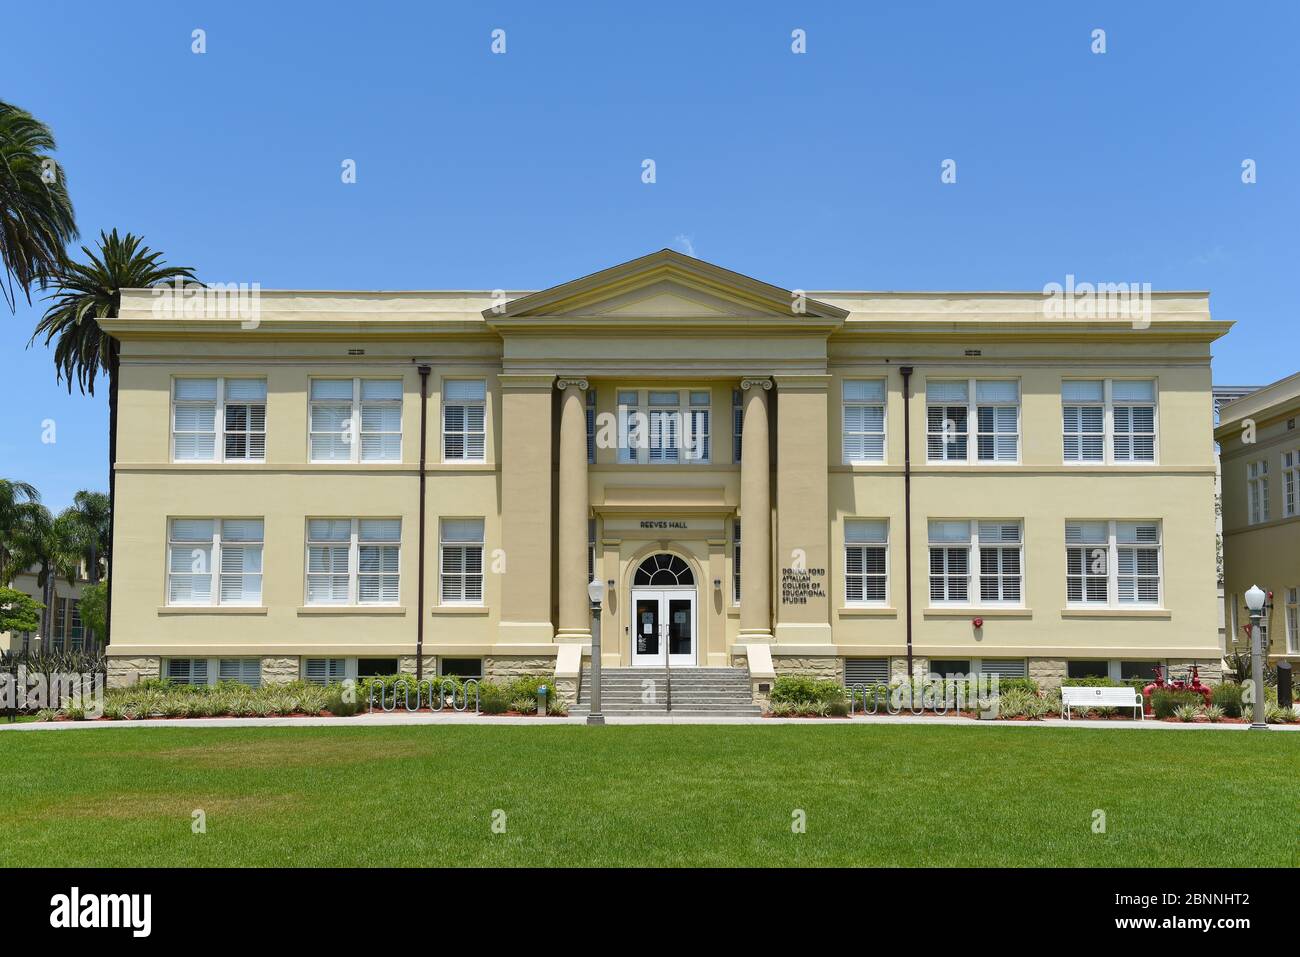 ORANGE, KALIFORNIEN - 14. MAI 2020: Reeves Hall auf dem Campus der Chapman University. Stockfoto